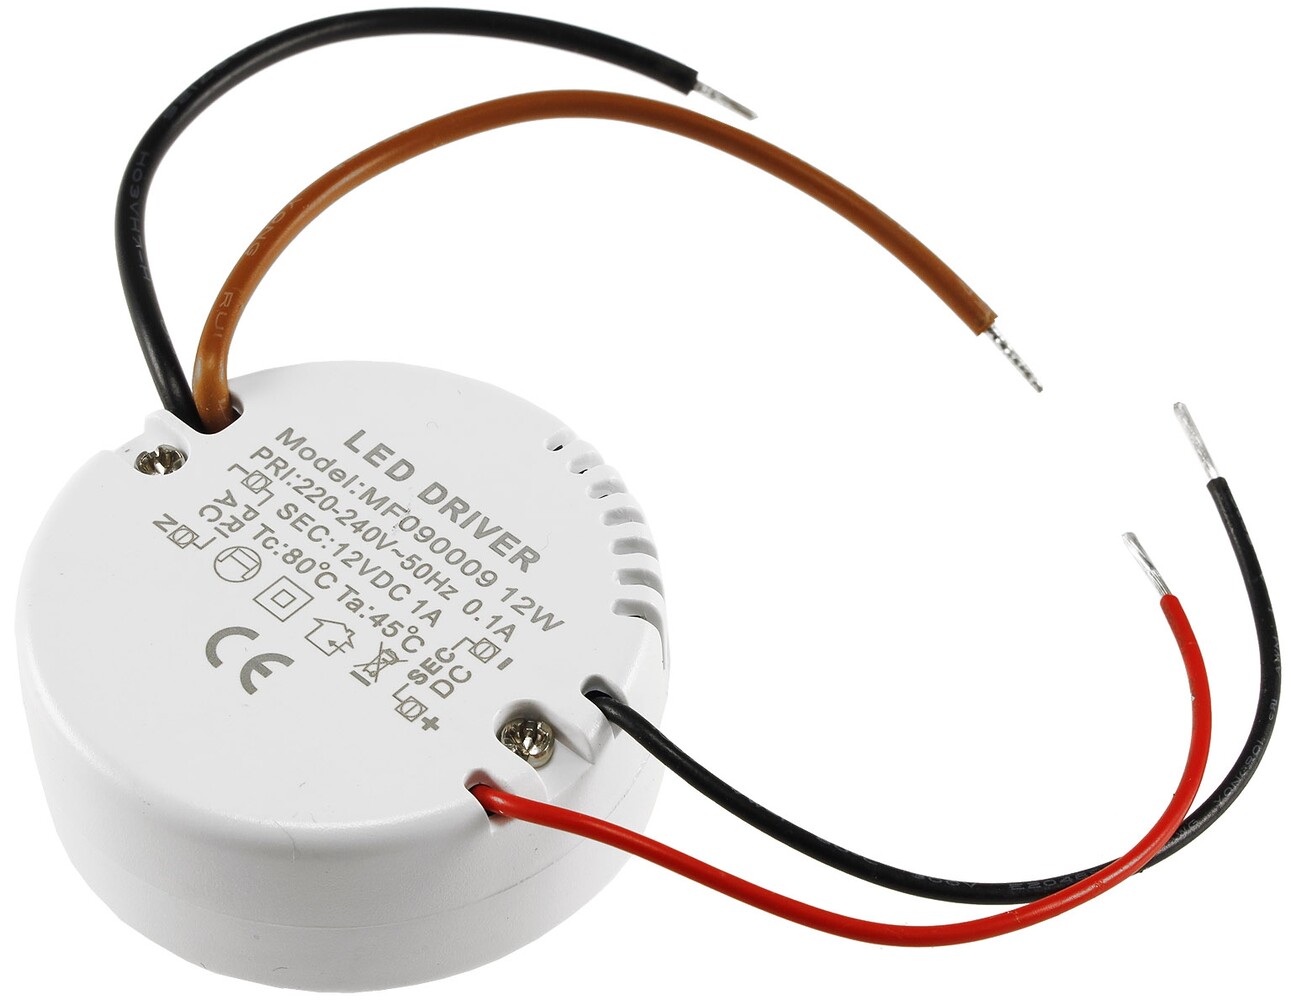 Hochwertiges, rundes LED Netzteil von ChiliTec mit konstanter Spannung